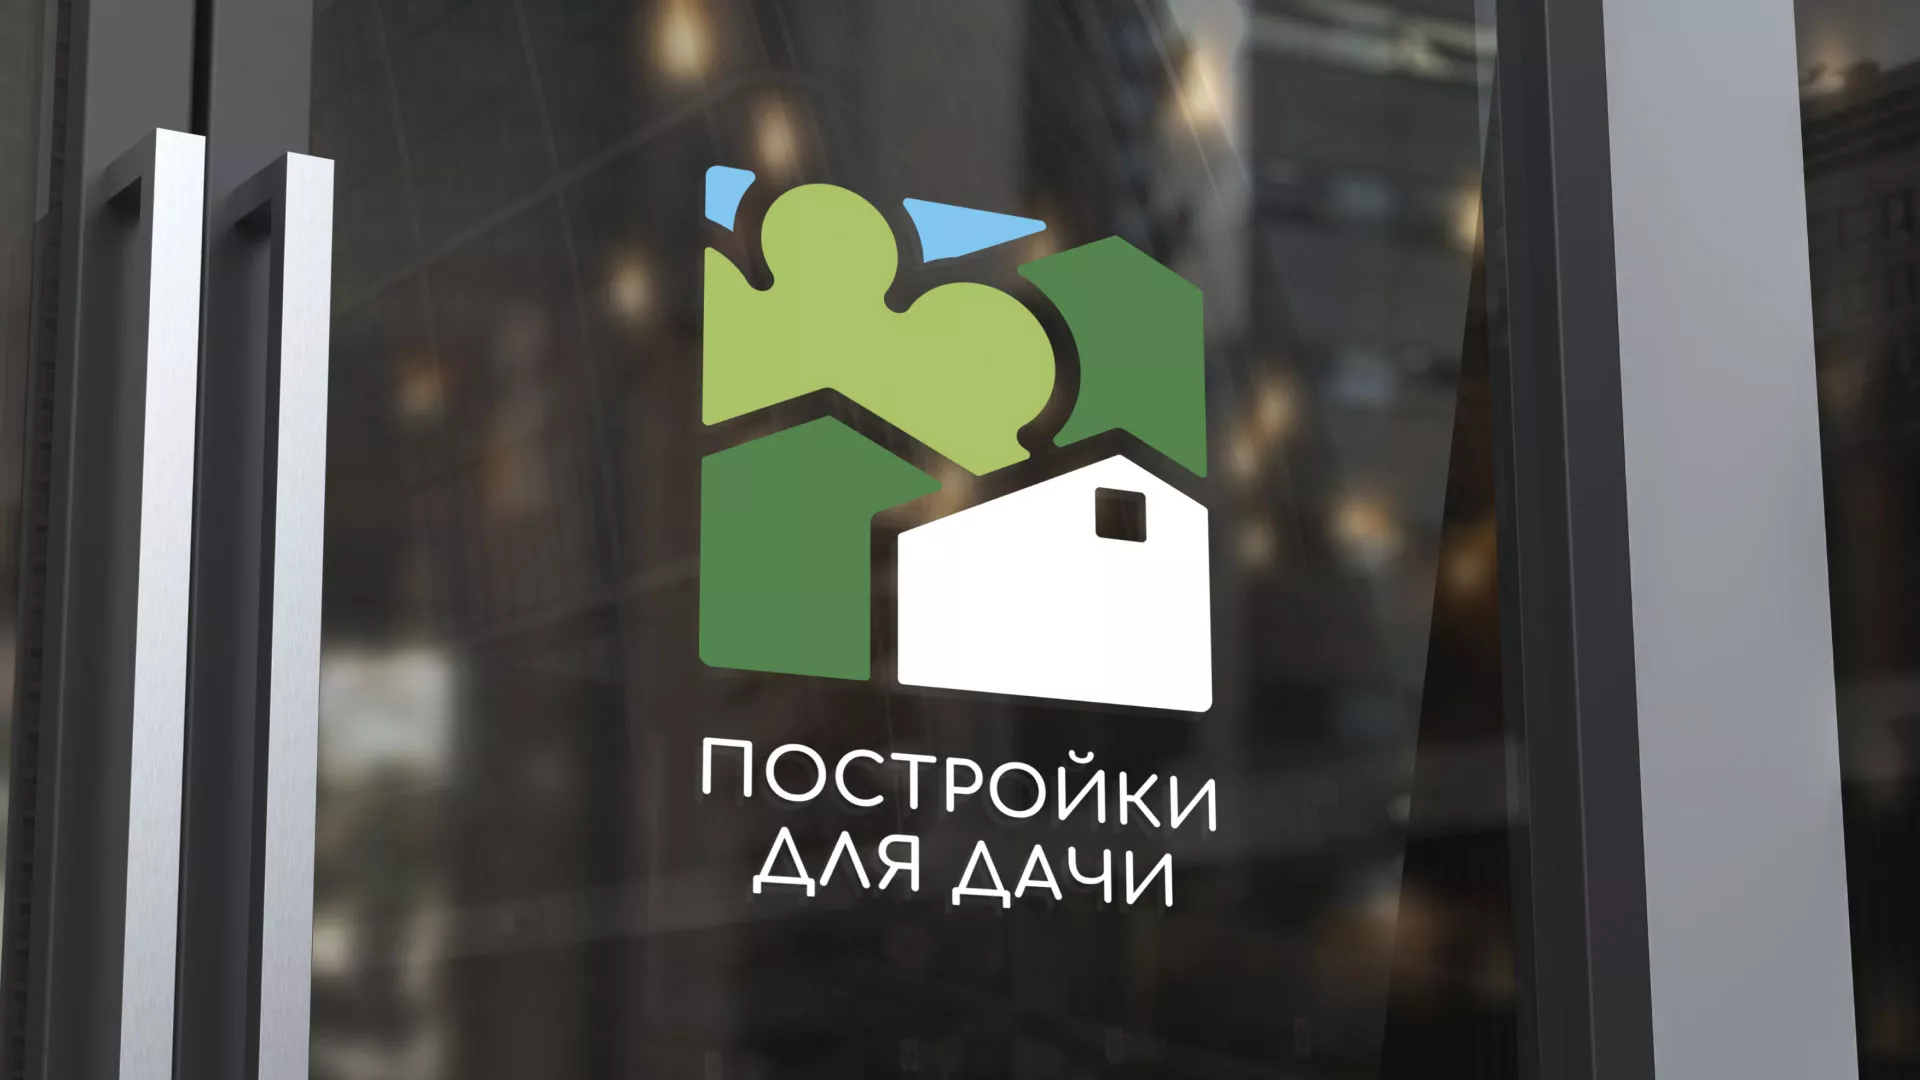 Разработка логотипа в Майском для компании «Постройки для дачи»